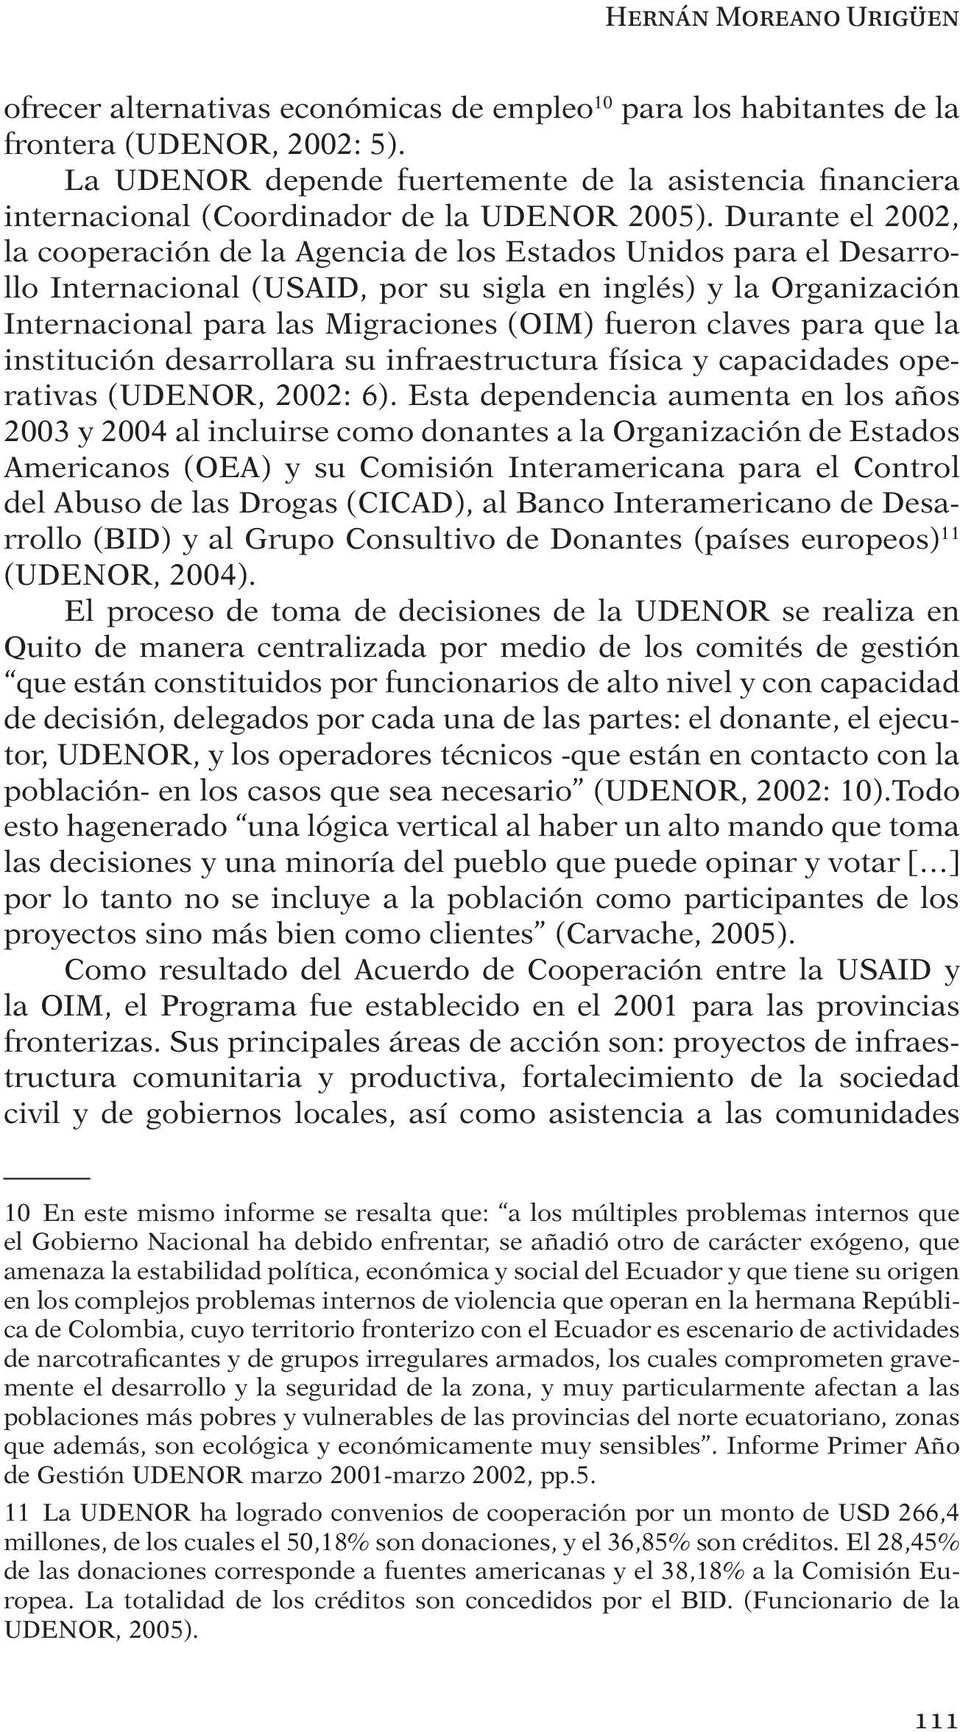 Durante el 2002, la cooperación de la Agencia de los Estados Unidos para el Desarrollo Internacional (USAID, por su sigla en inglés) y la Organización Internacional para las Migraciones (OIM) fueron